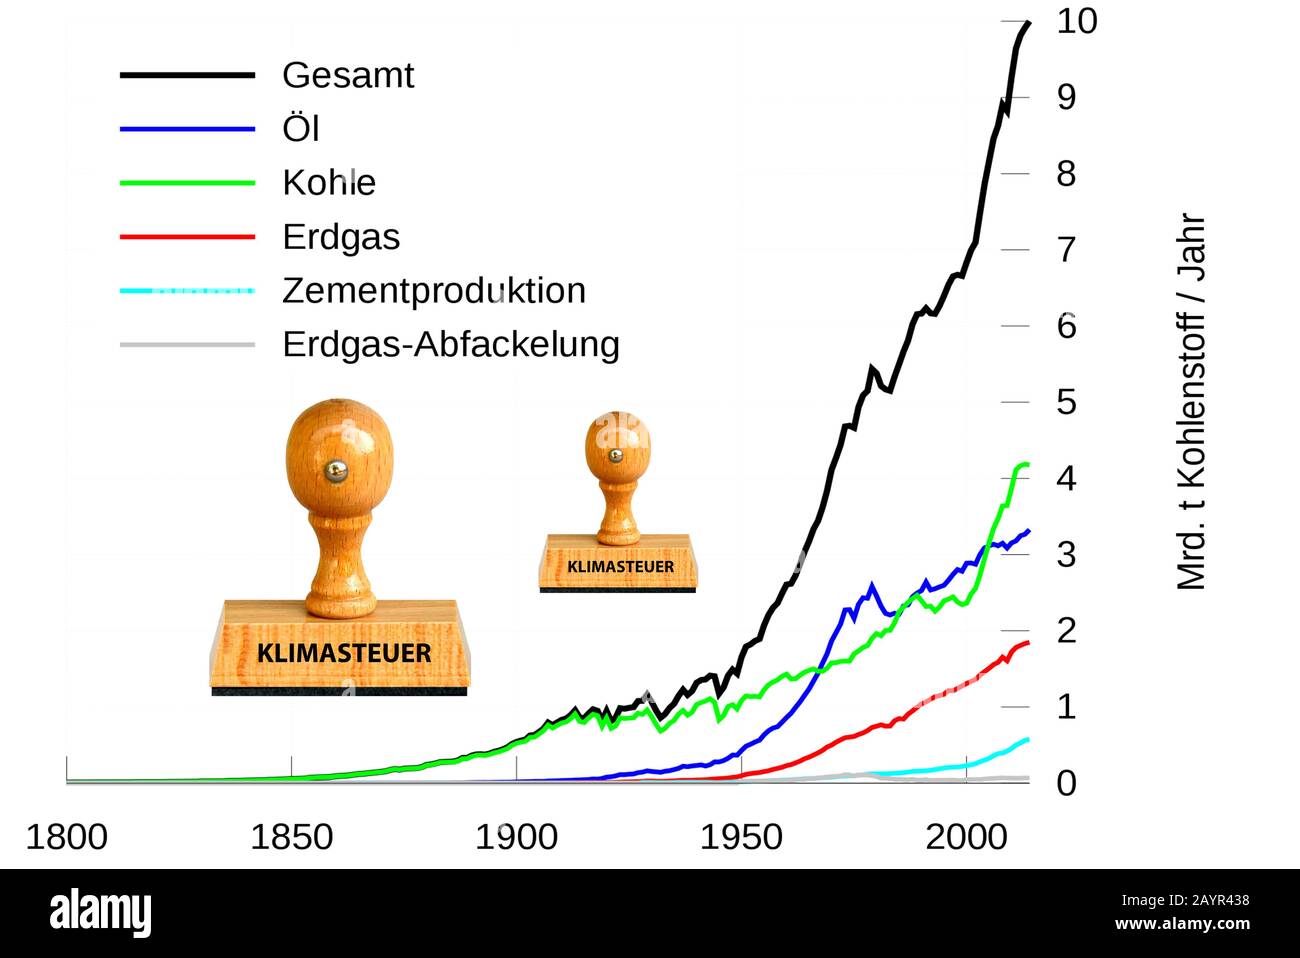 Timbre lettrage Klimasteuer, taxe sur l'escalade, graphik avec incréas d'émission de CO 2, Allemagne Banque D'Images